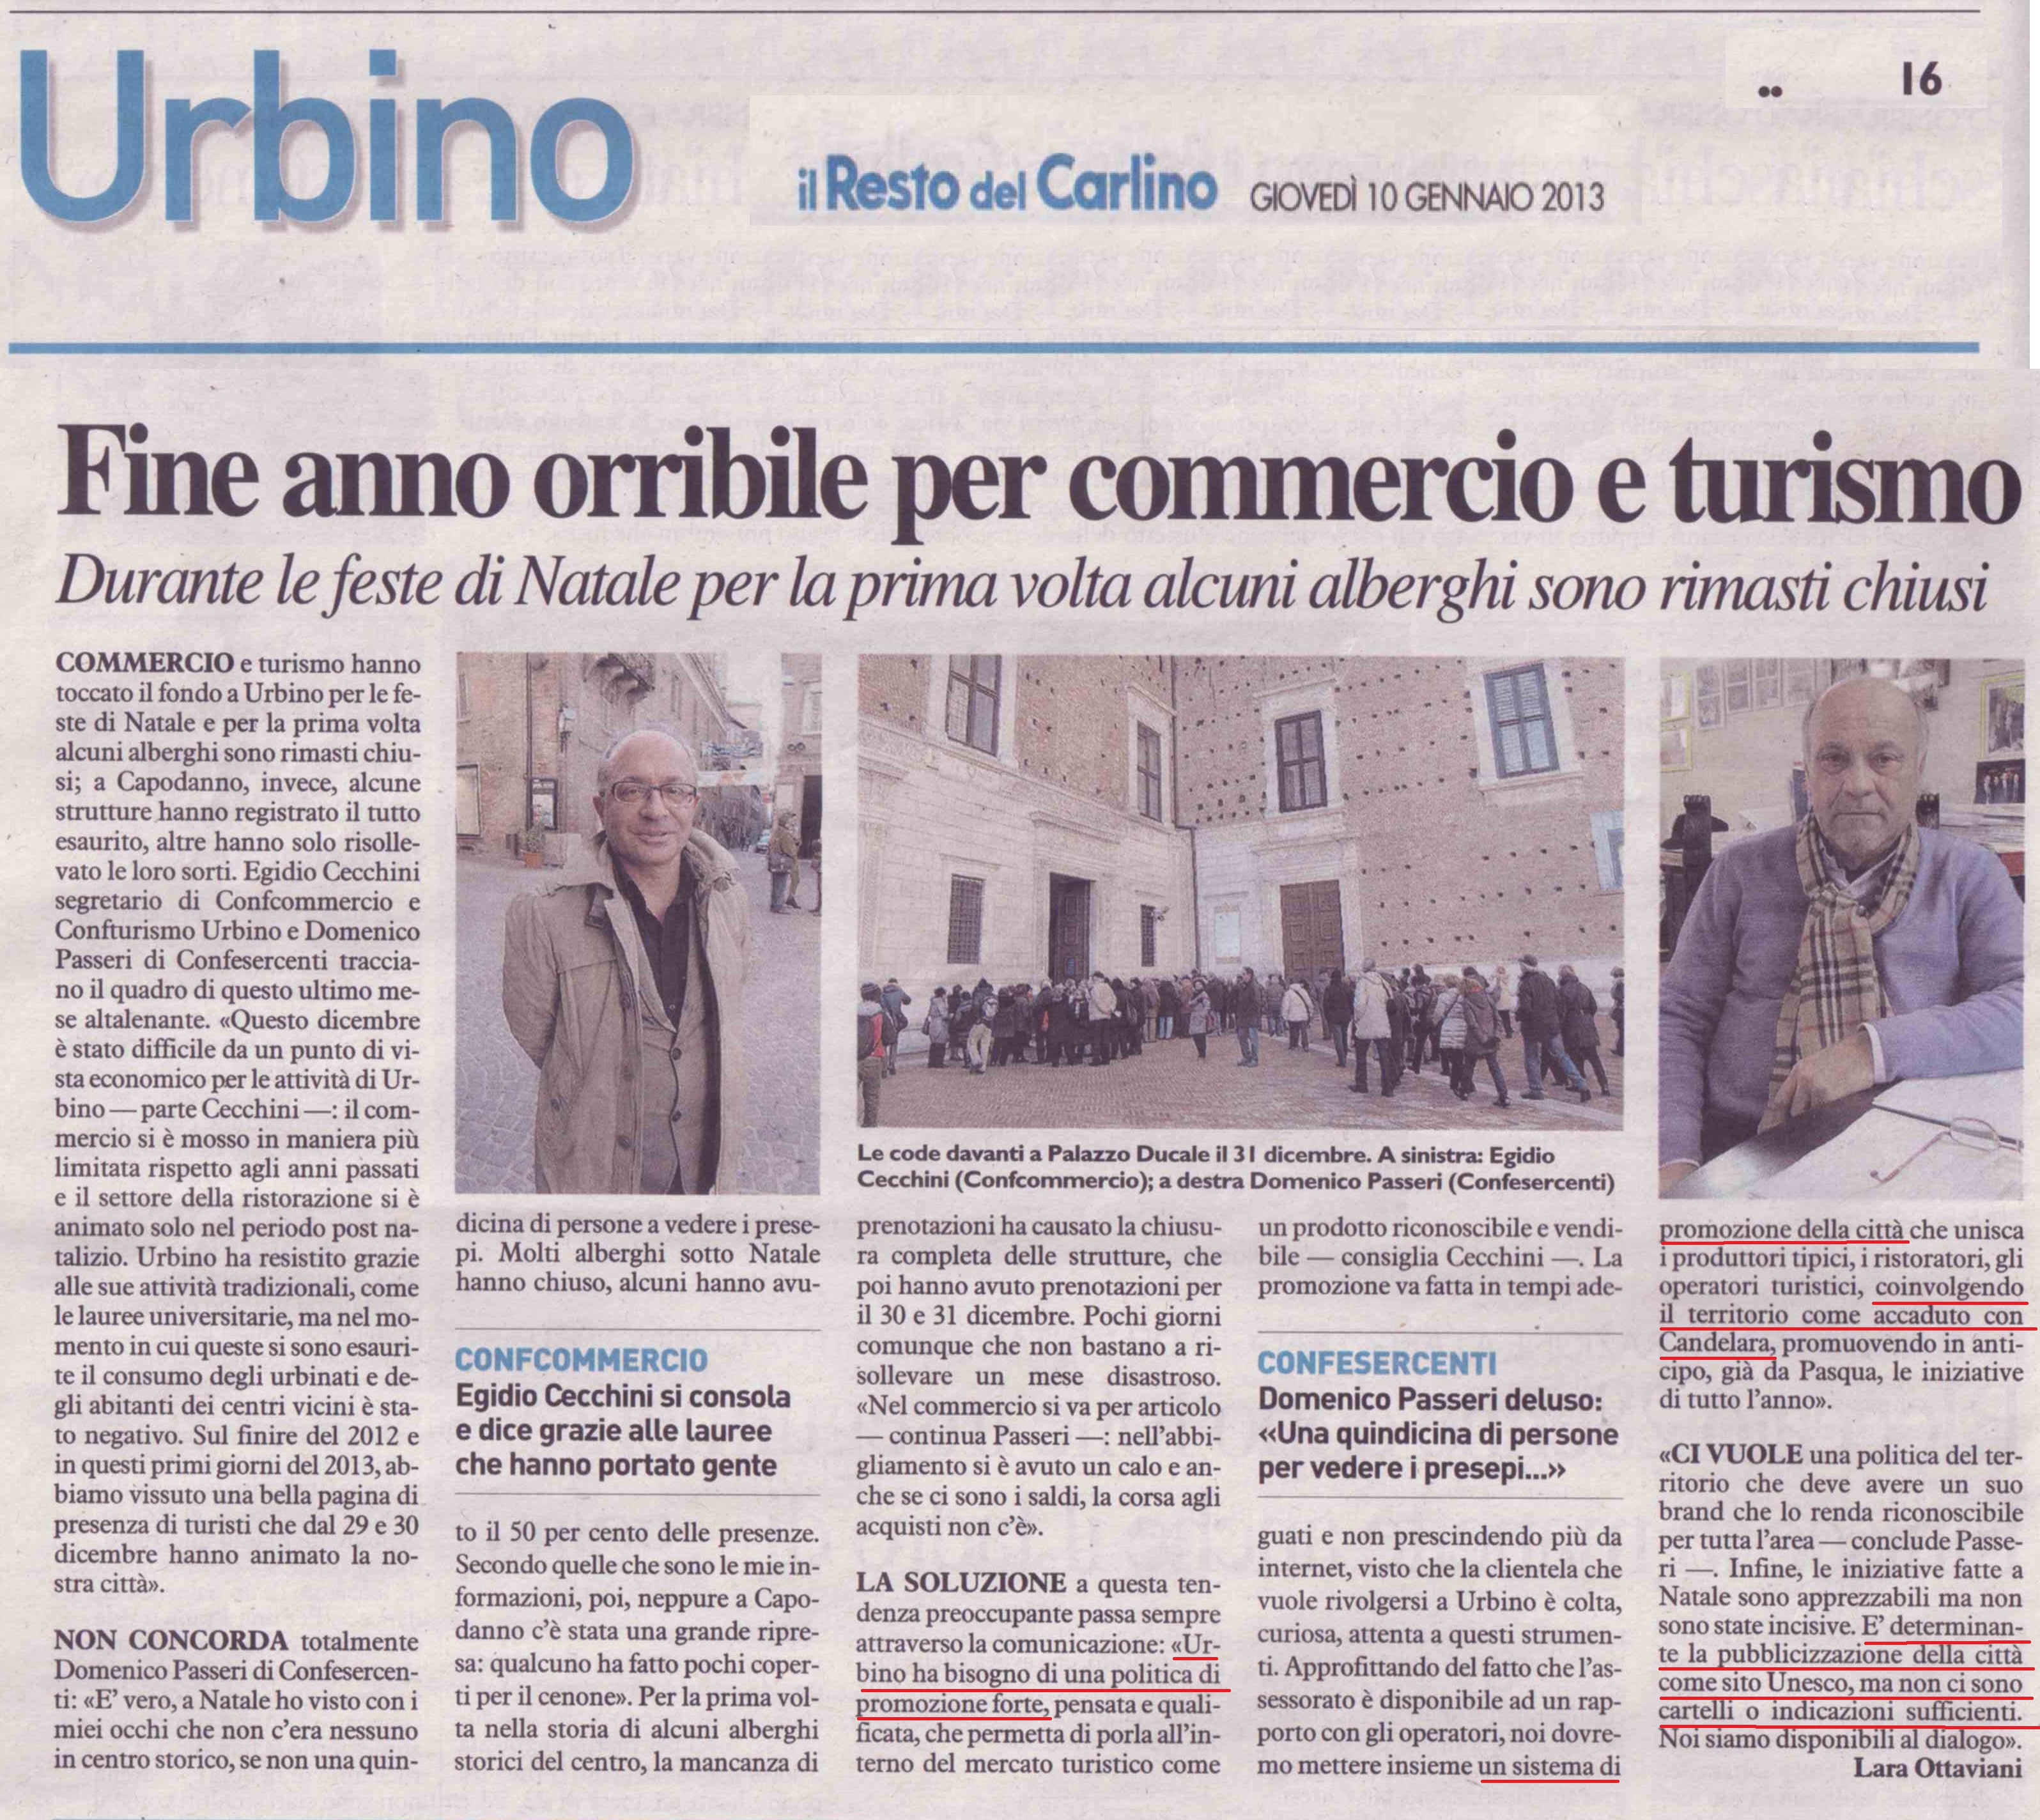 Urbino fine anno orribile per turismo e commercio